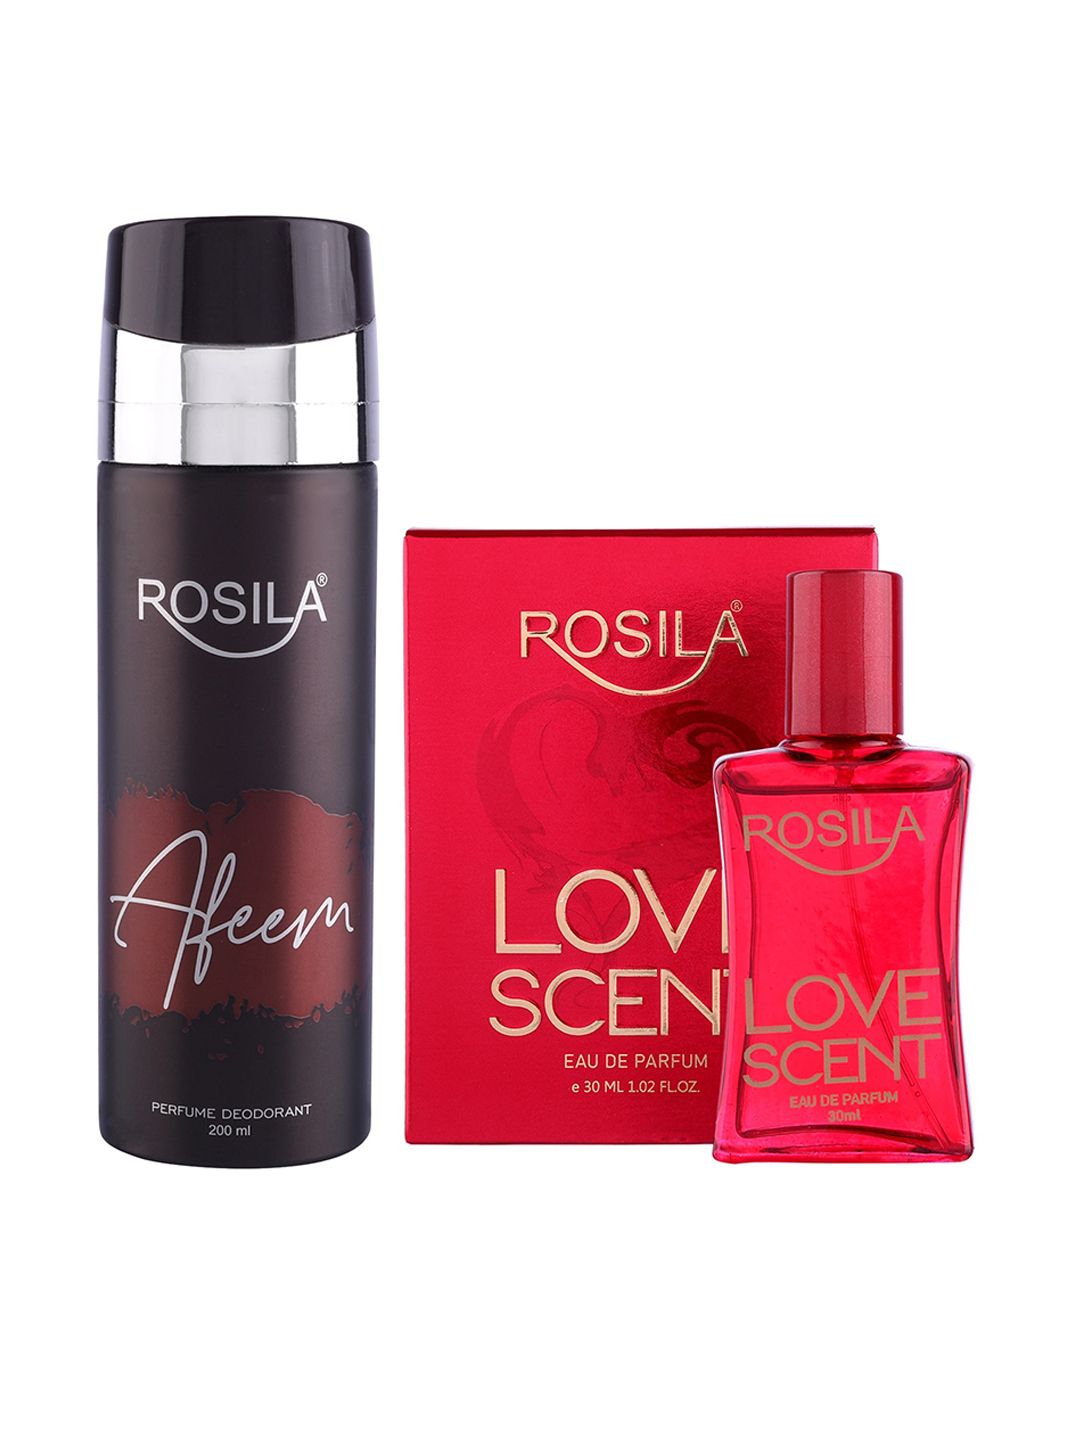 ROSILA Set of Afeem Deodorant Body Spray 200ml & Love Scent Eau de Parfum 30ml Price in India